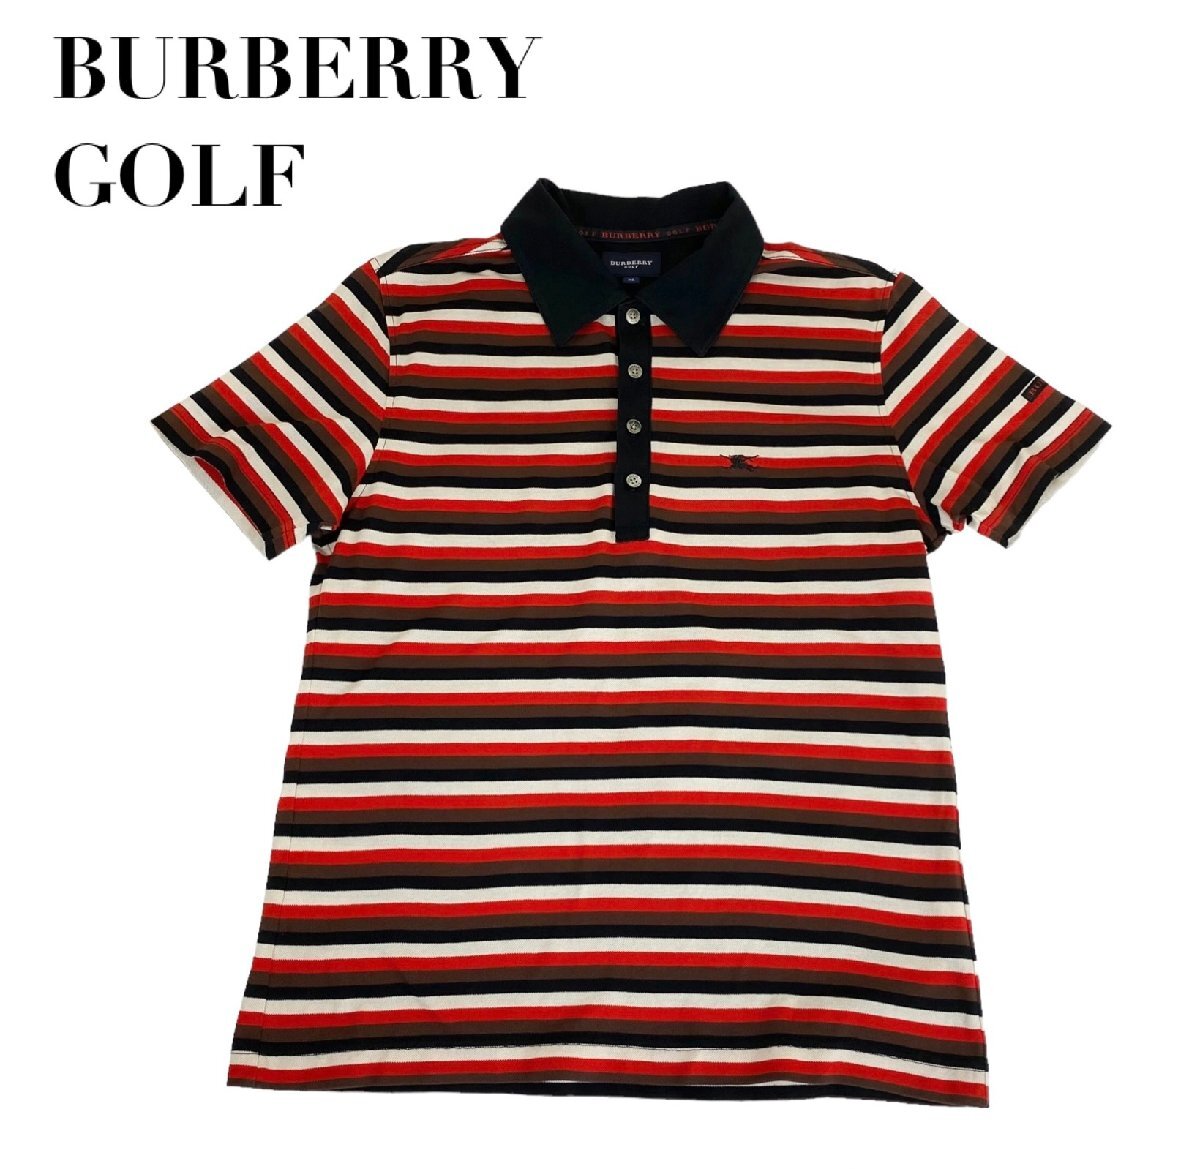 【1円開始】中古 バーバリーゴルフ BURBERRY GOLF 半袖 ポロシャツ ボーダー柄 メンズ Mサイズの画像1